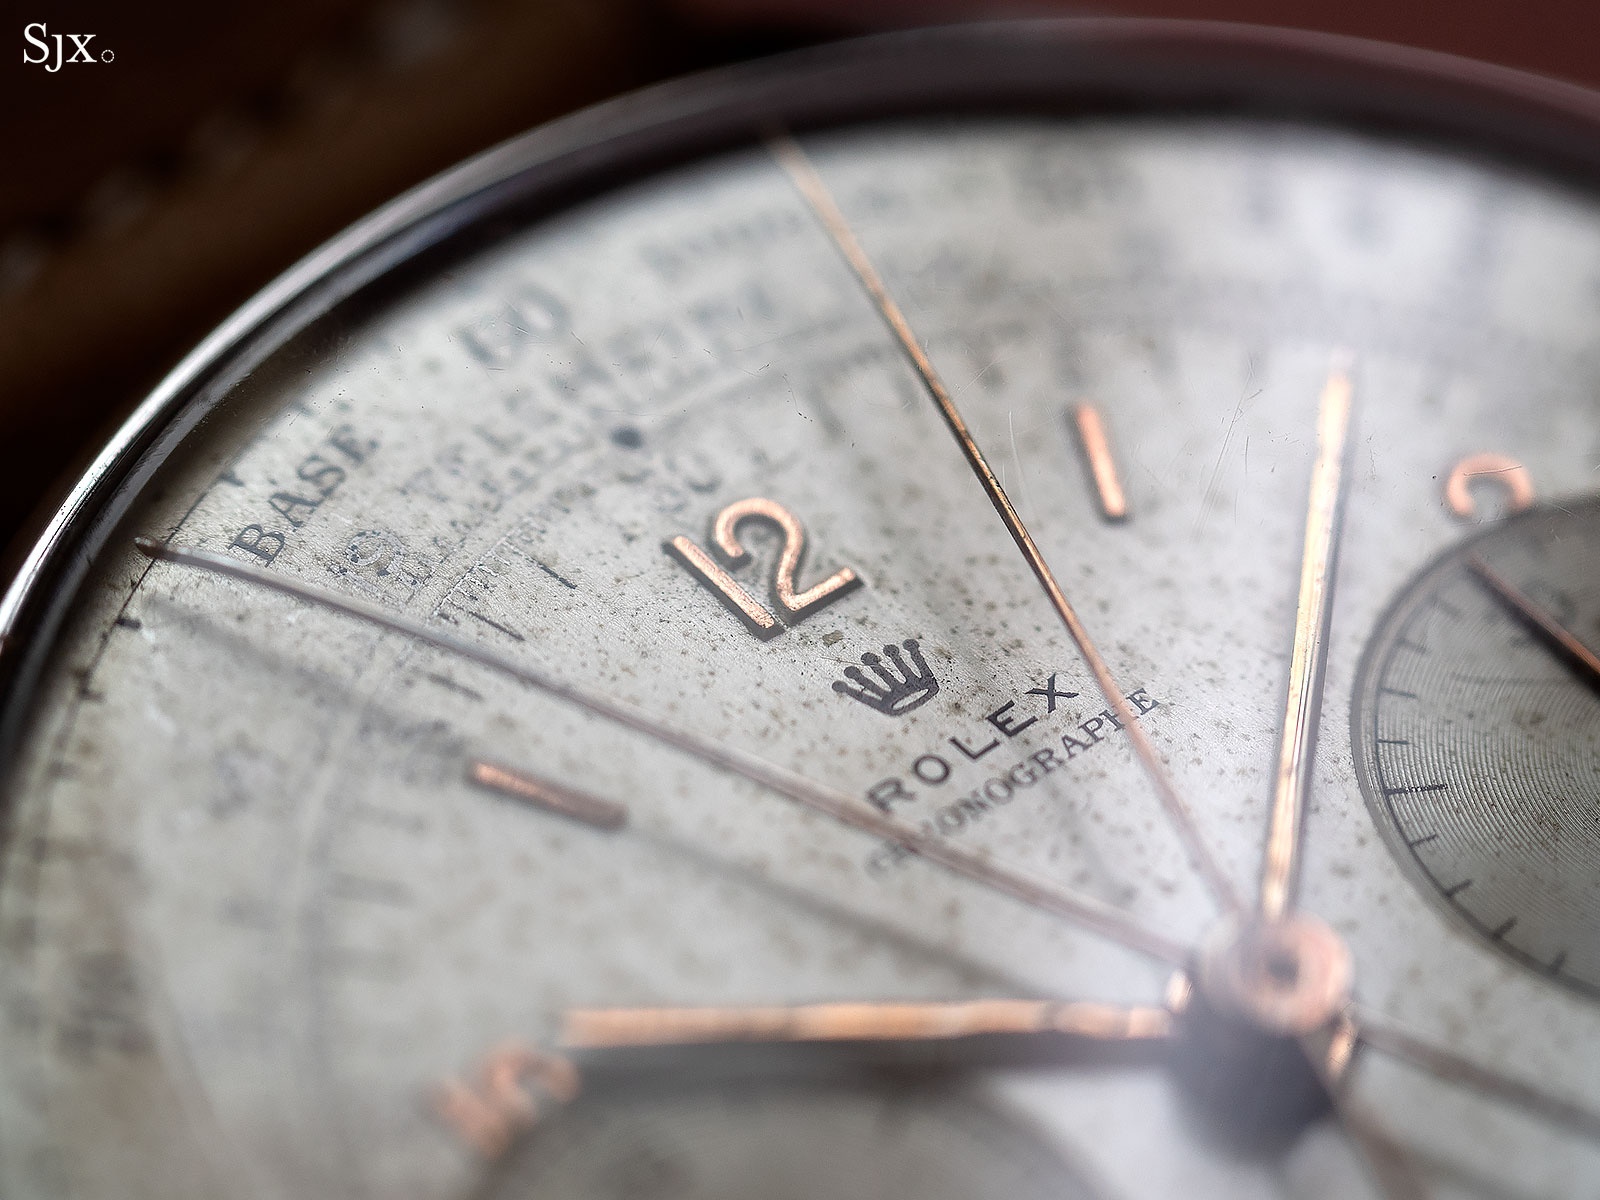 Cận cảnh đồng hồ Rolex hiếm vừa lập kỷ lục đấu giá 3,5 triệu USD - ảnh 4